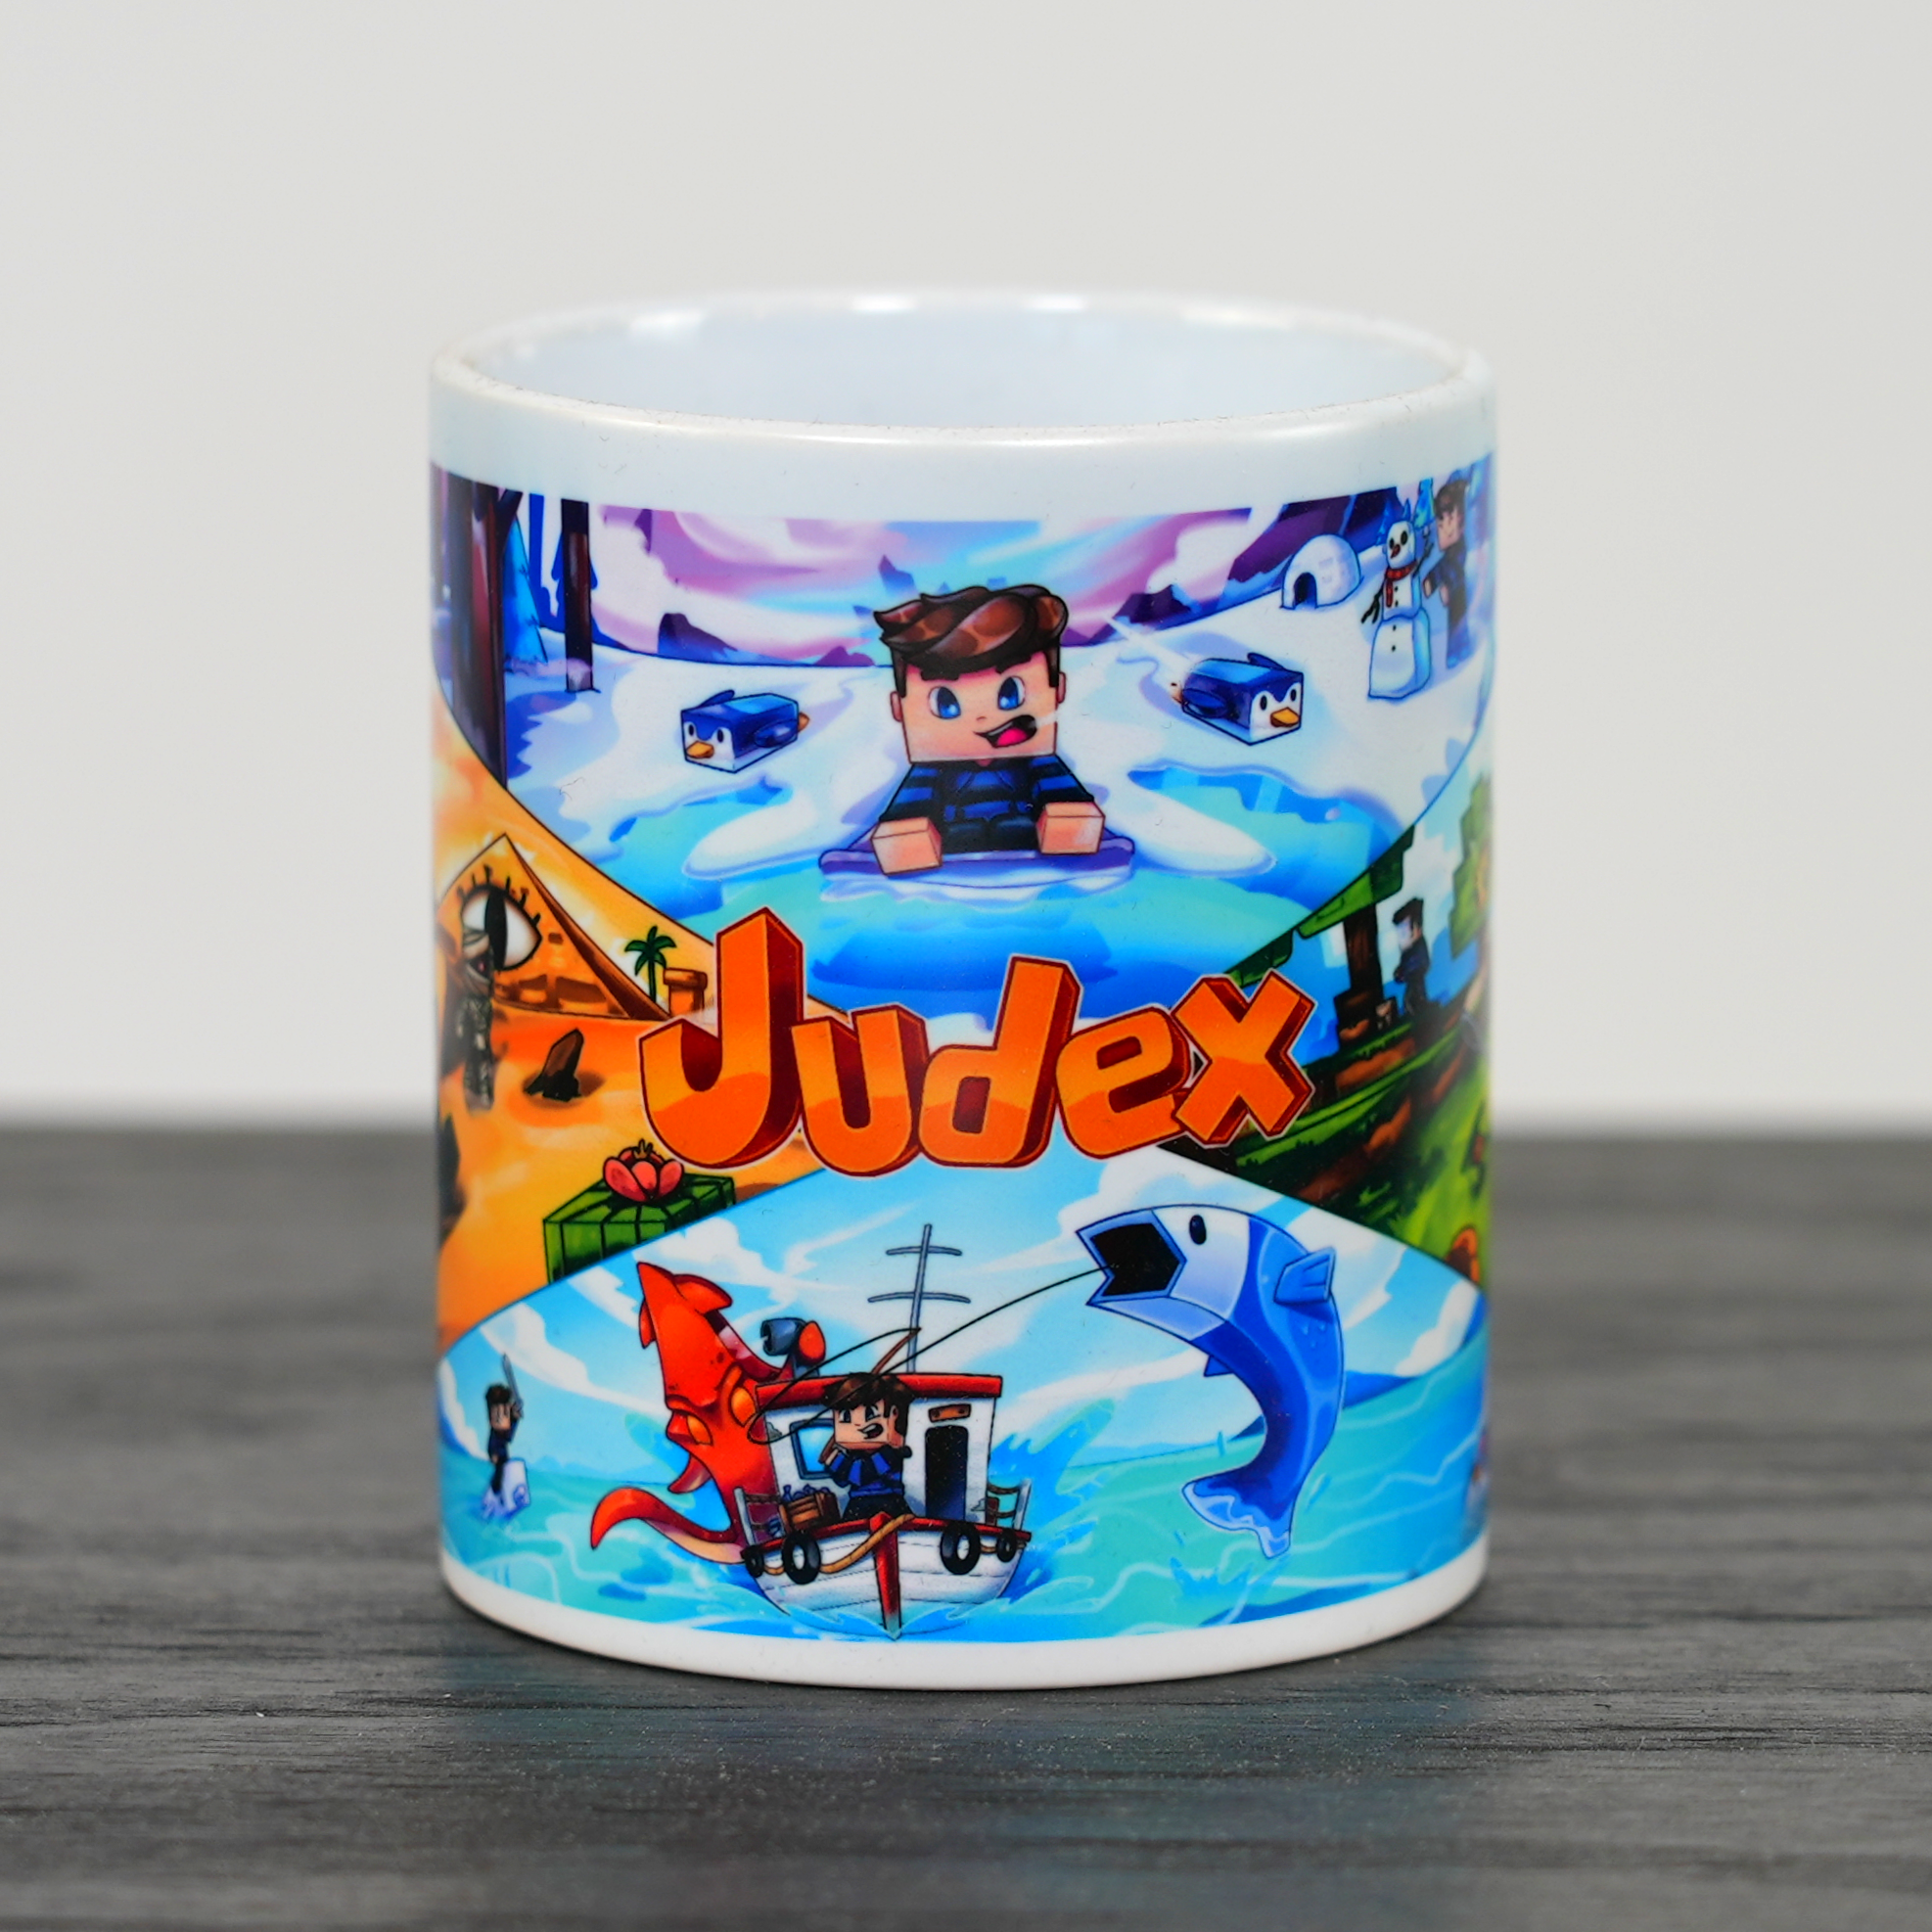 Judex Cup